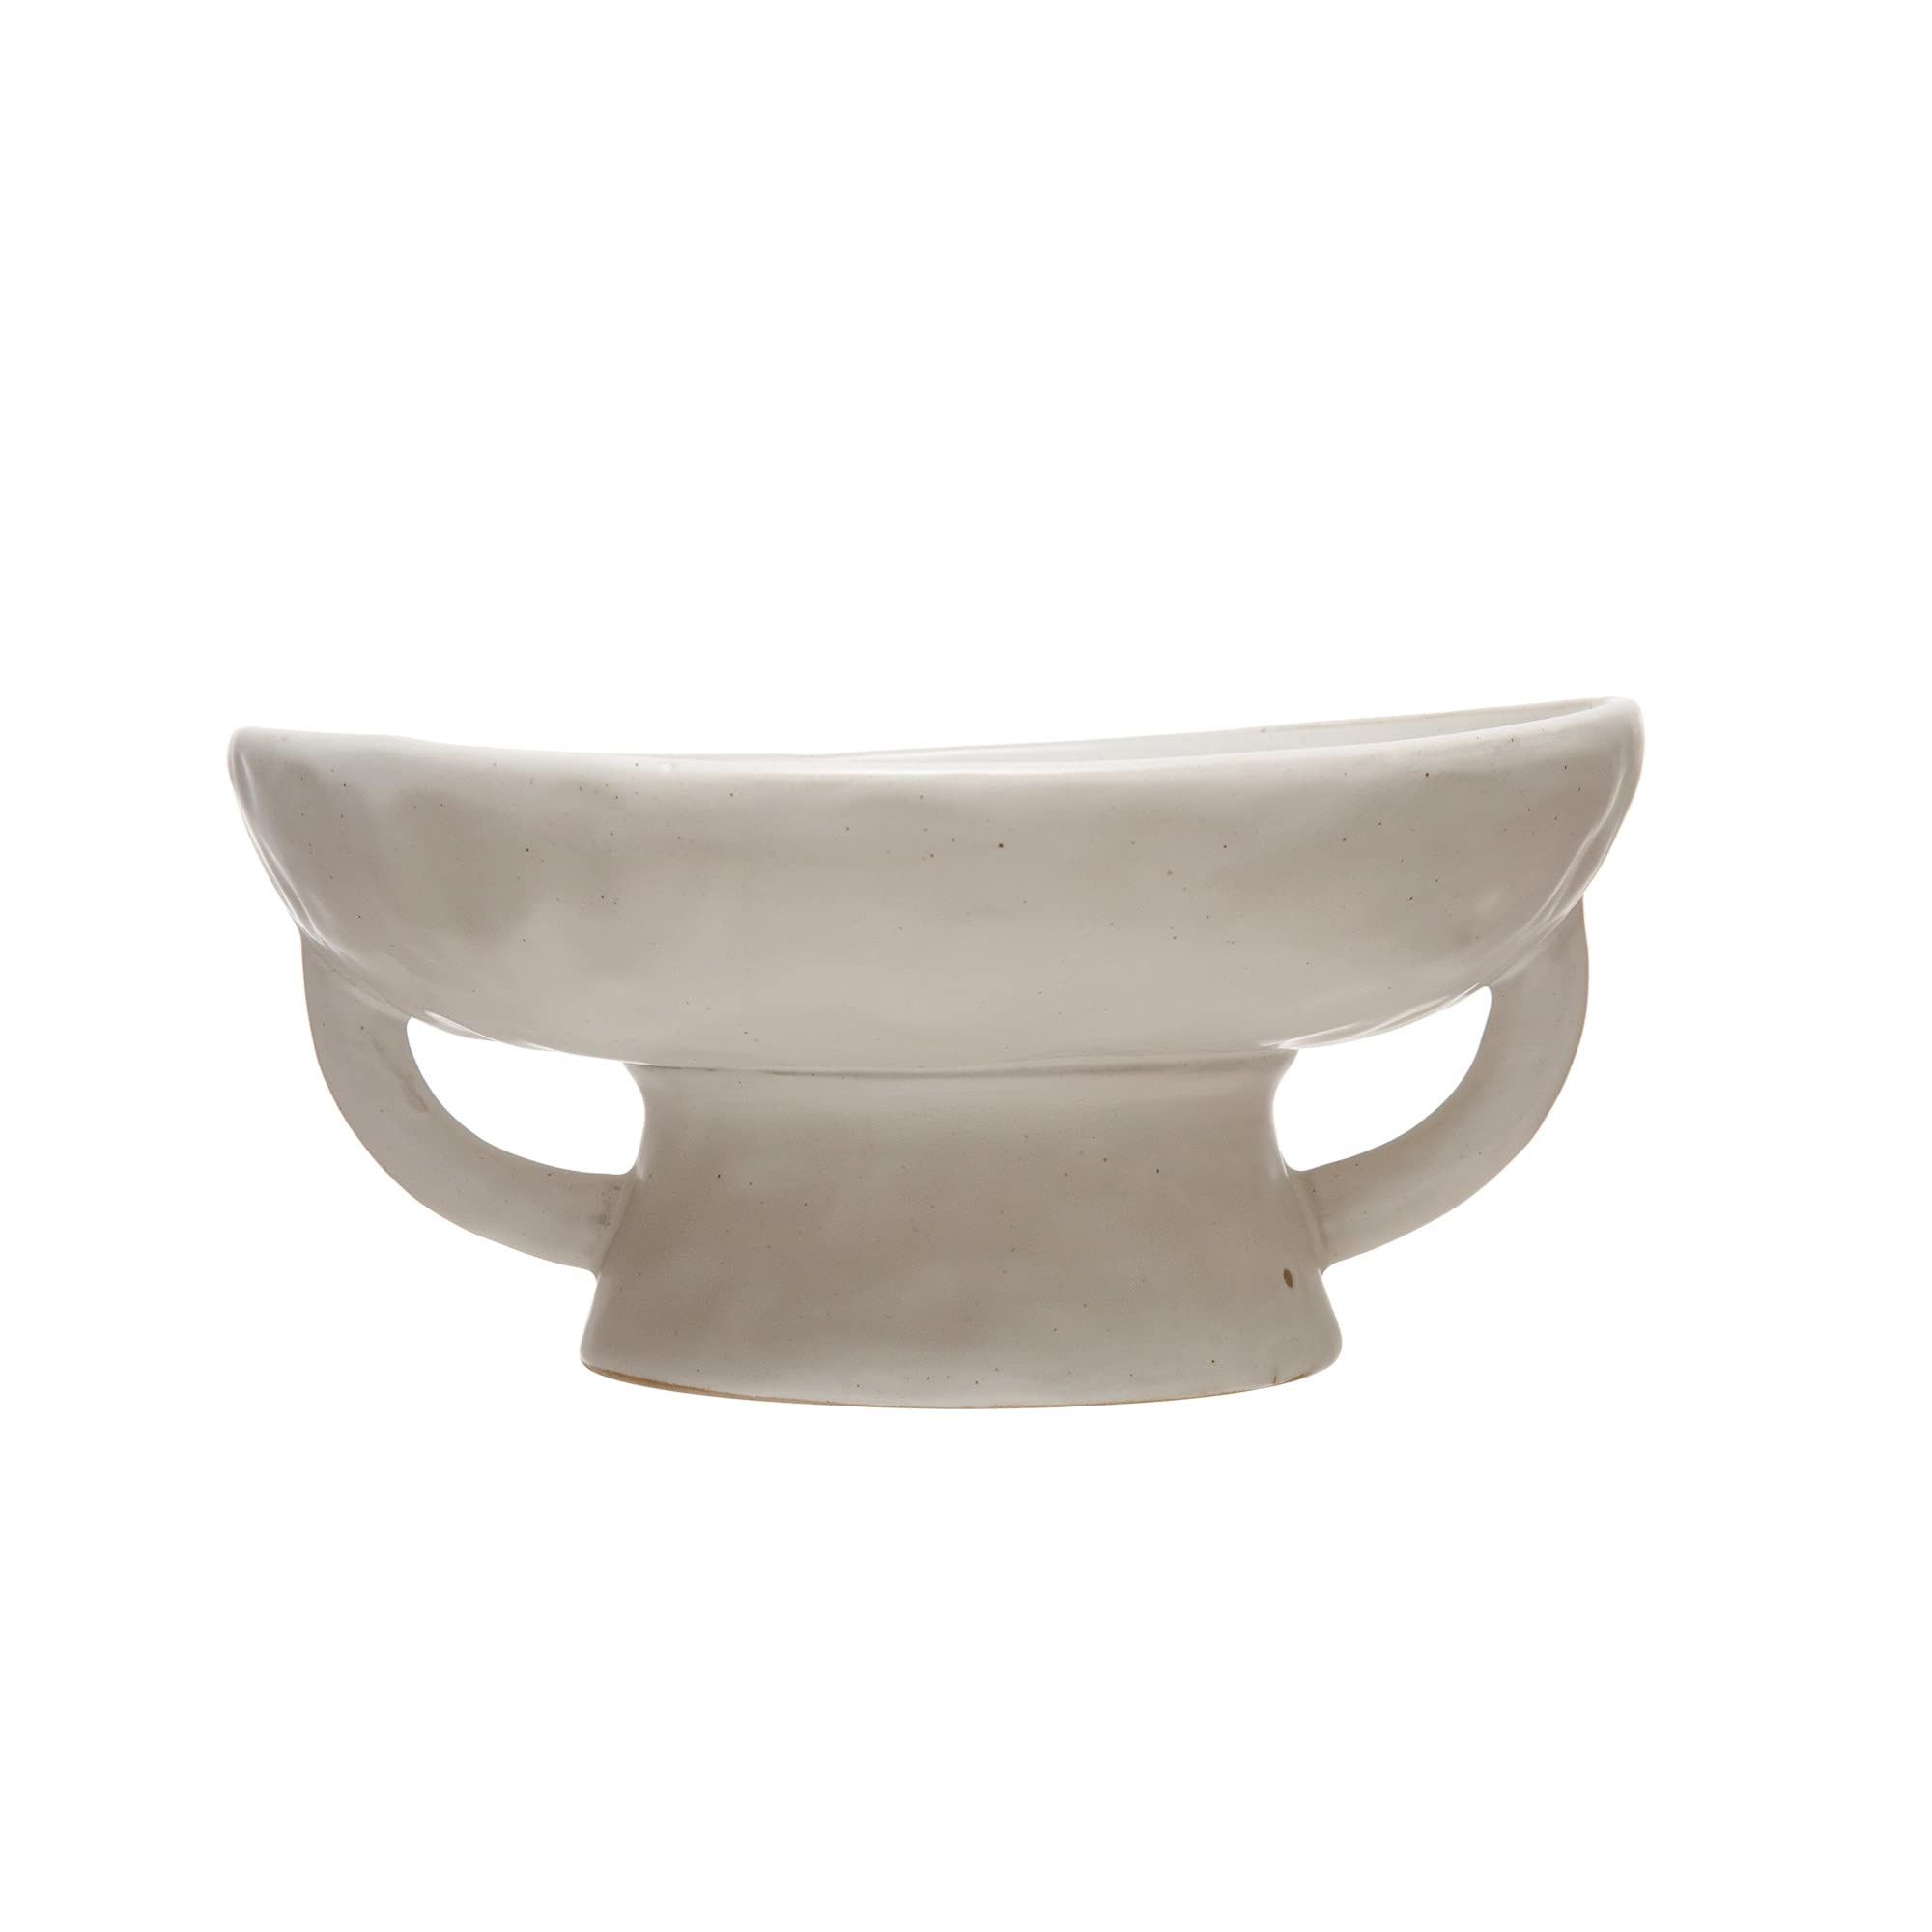 Creative Co-Op Stoneware Bowl w Reactive Glaze, Décor, Matte White,12 ounces | Amazon (US)